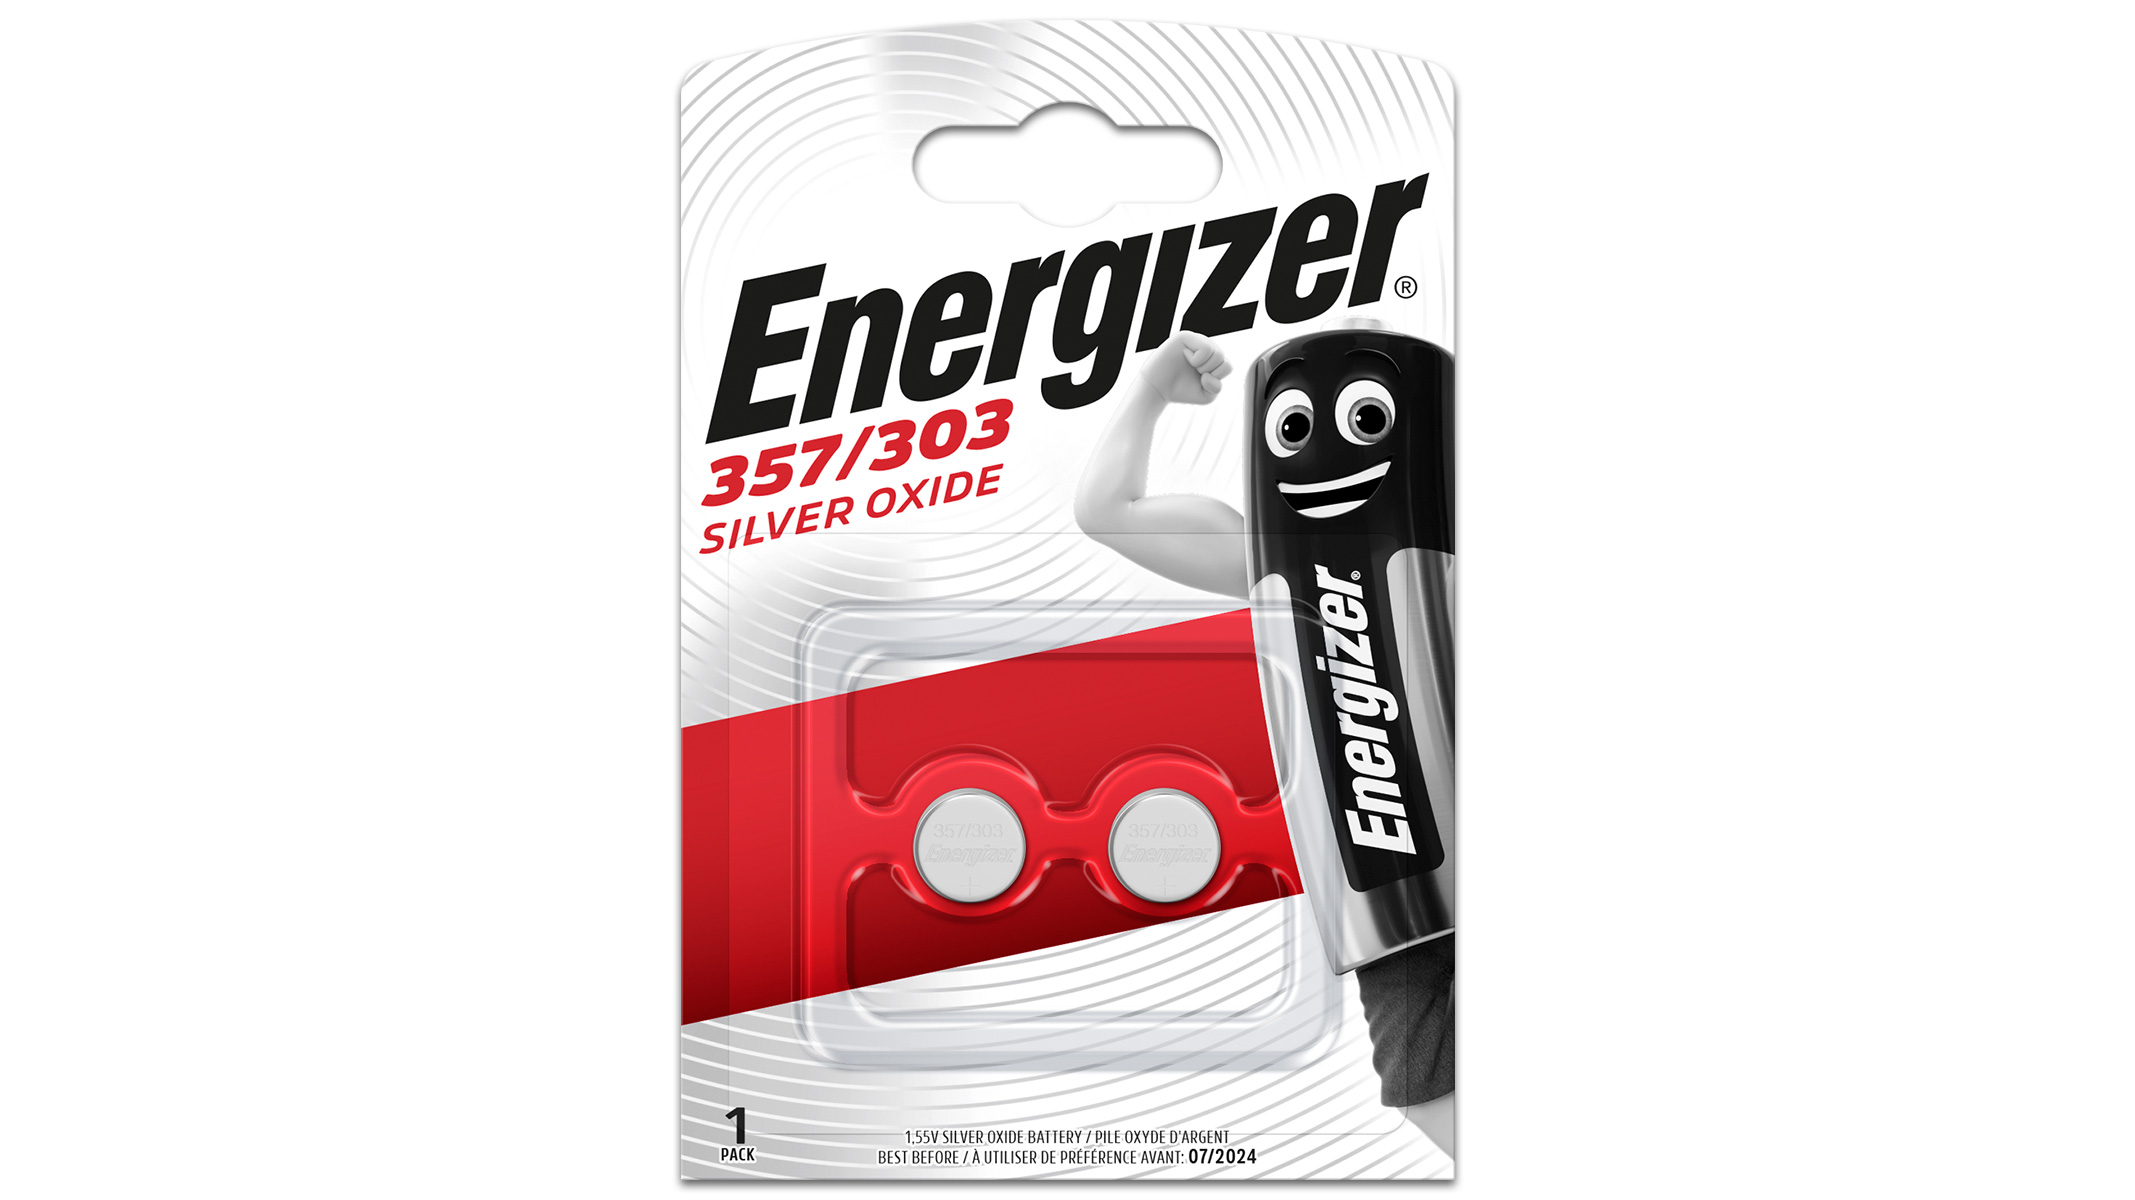 2 Piles Energizer EPX76 dans un blister (SR44/357/303)